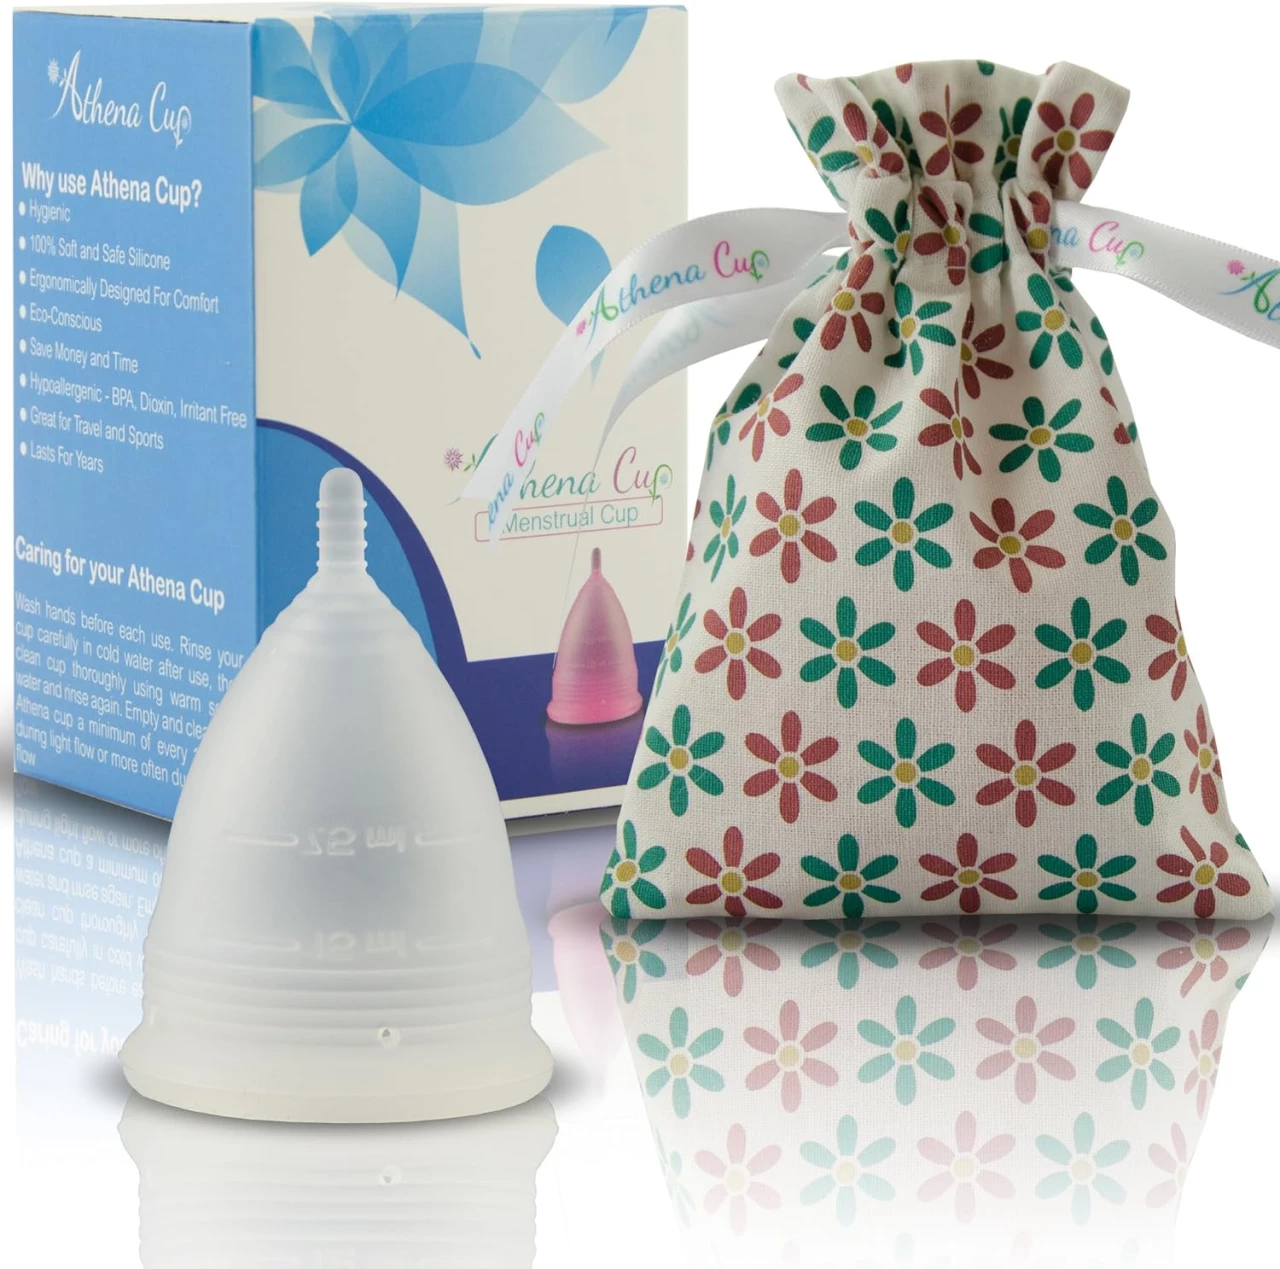 Athena Copa Menstrual – La copa menstrual más recomendada - Incluye una bolsa de regalo - Talla 2, Transparente - ¡Ausencia de pérdidas garantizada!